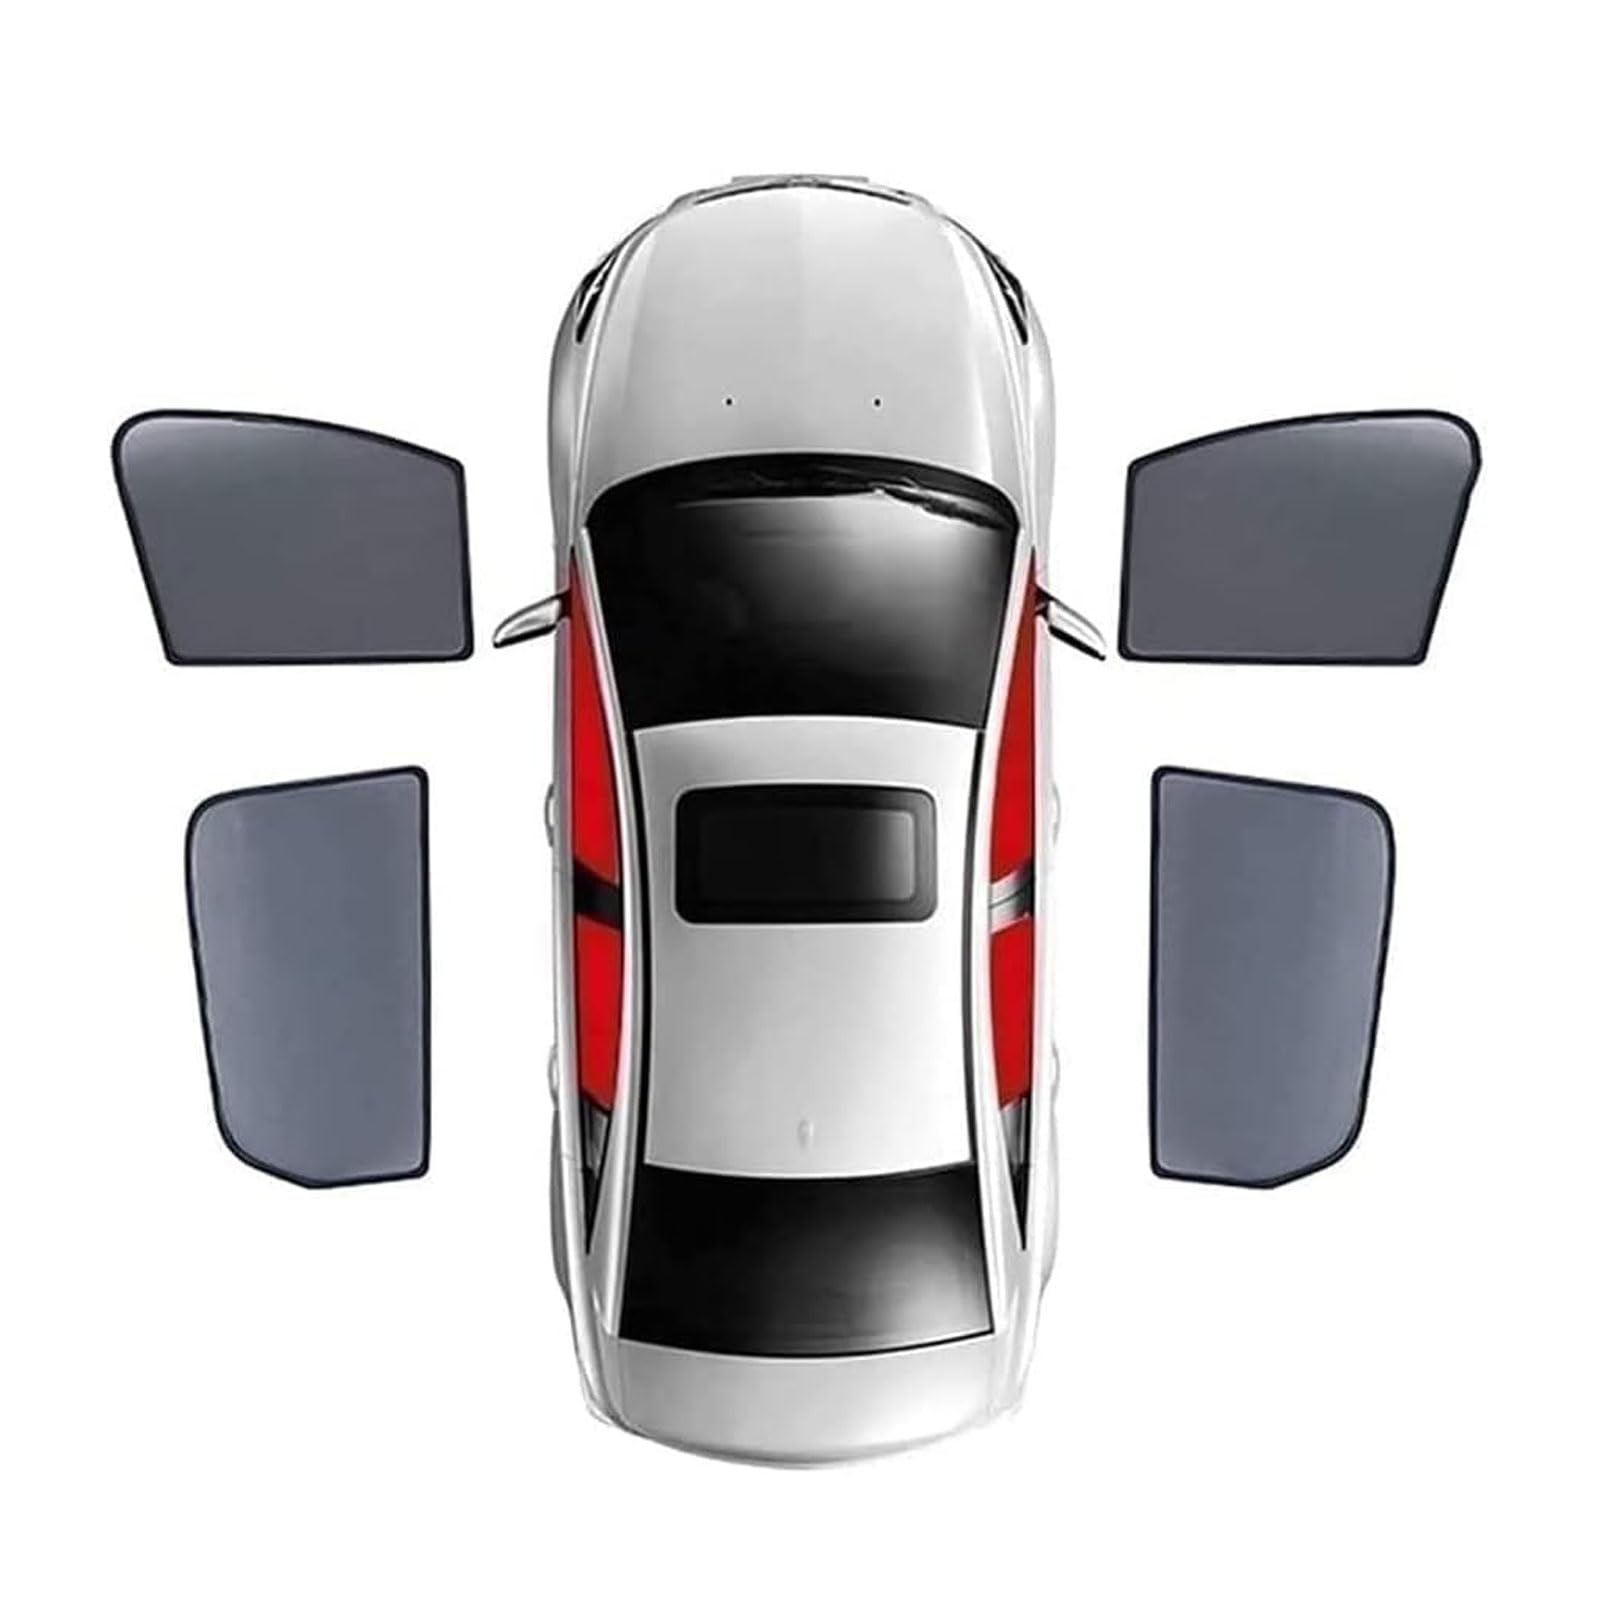 Sonnenschutz Auto Seitenfenster für Ford New Fiesta Hatchback 2008-2019 2020 2021 2022 2023, Auto Sonnenschutz Wärmeisoliert UV Schutz PrivatsphäRe Schutz Zubehör,4pcs-doors-window von FCNNYBF